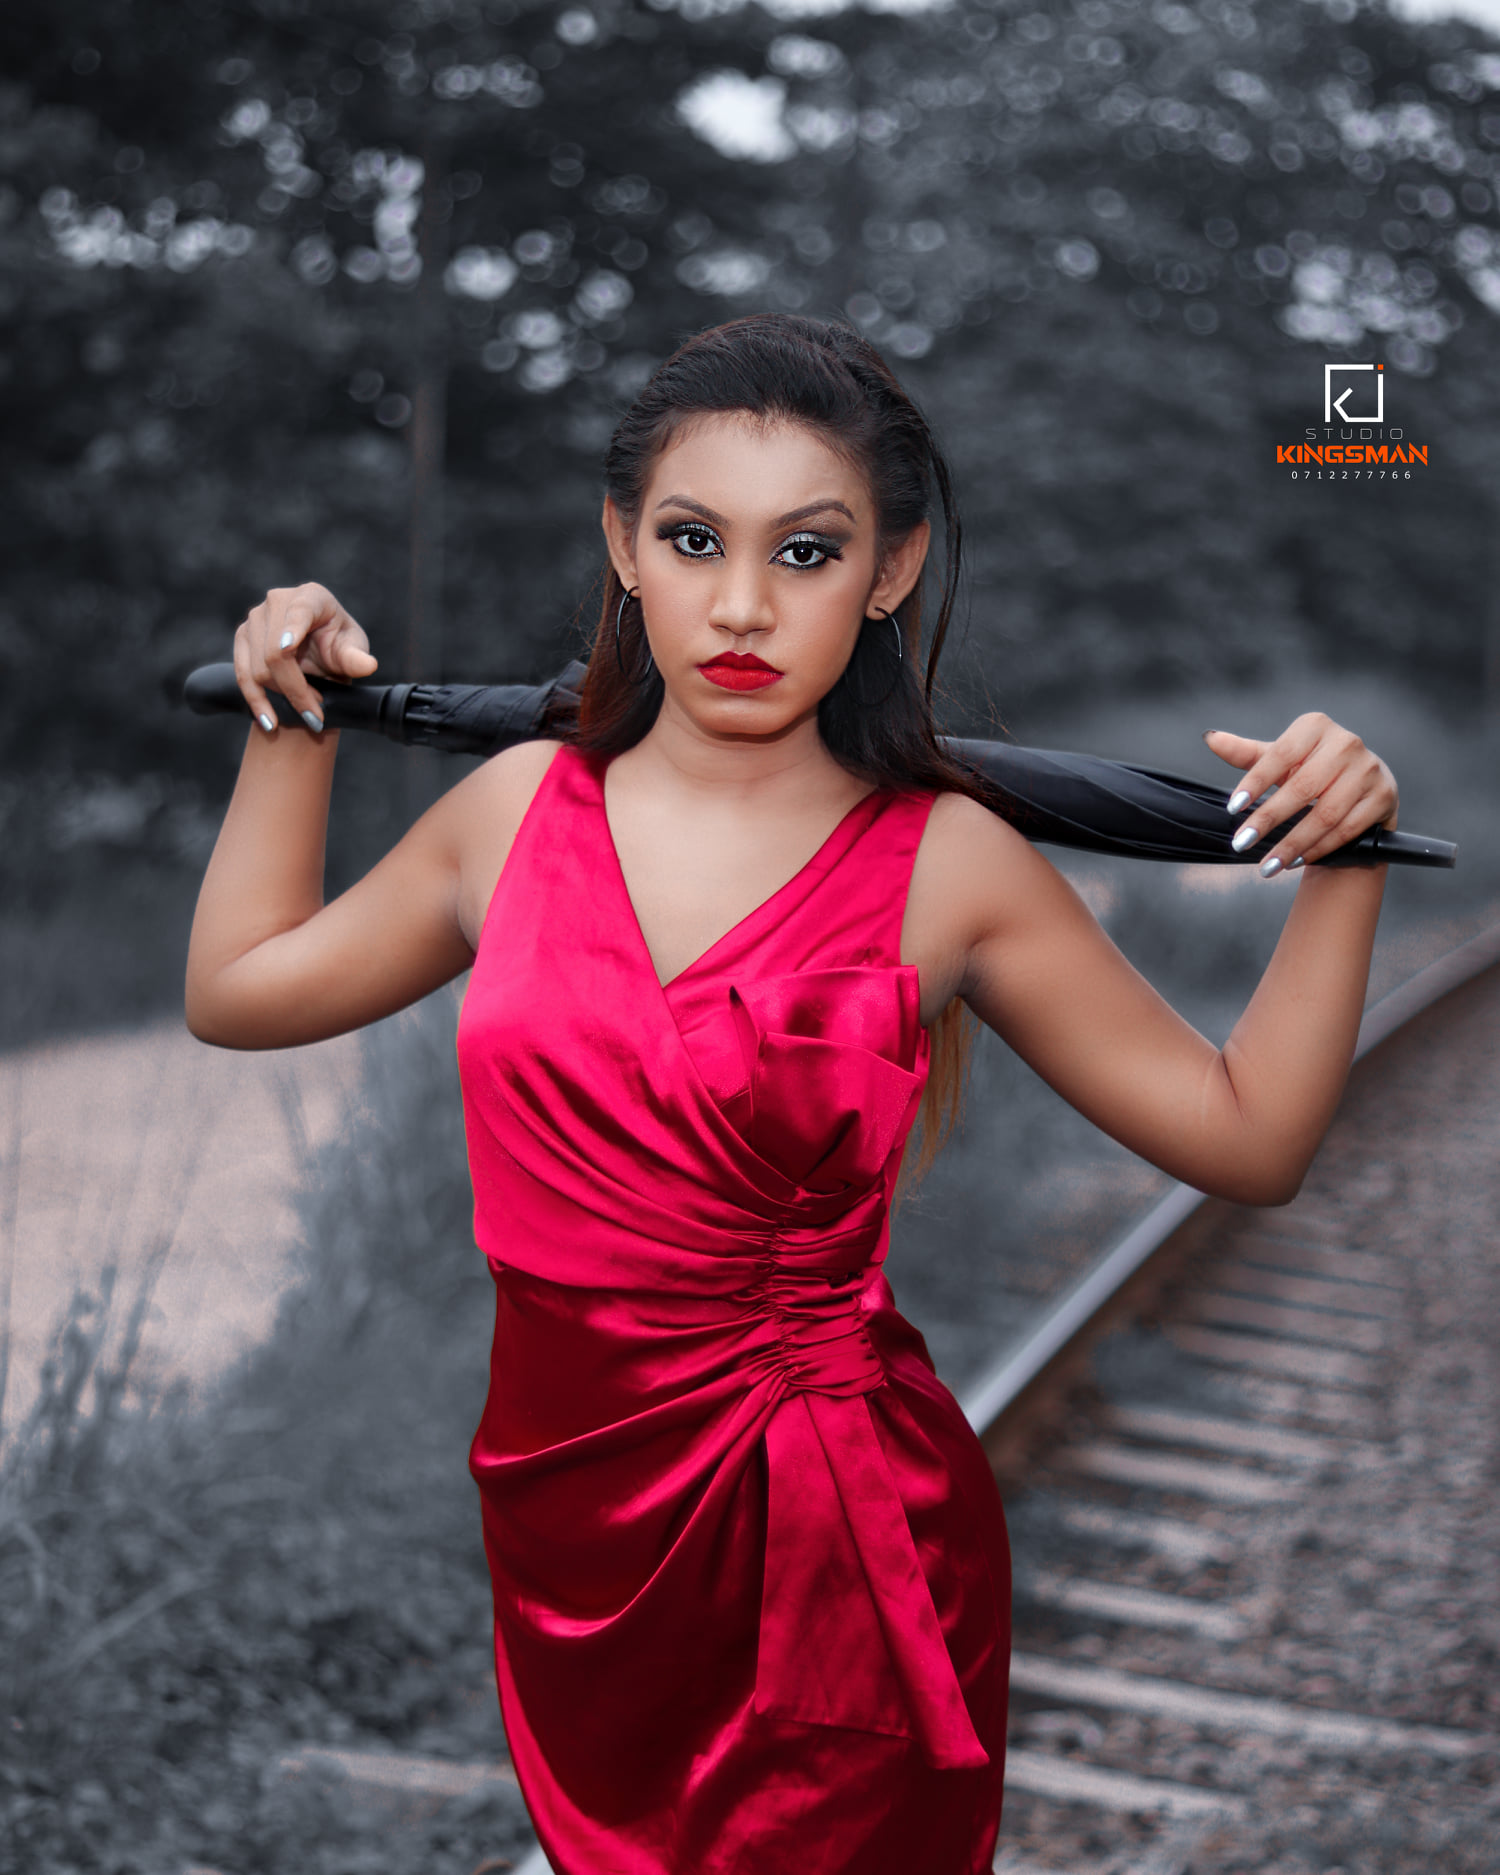 Sri lankan Model Irushi Shimithry